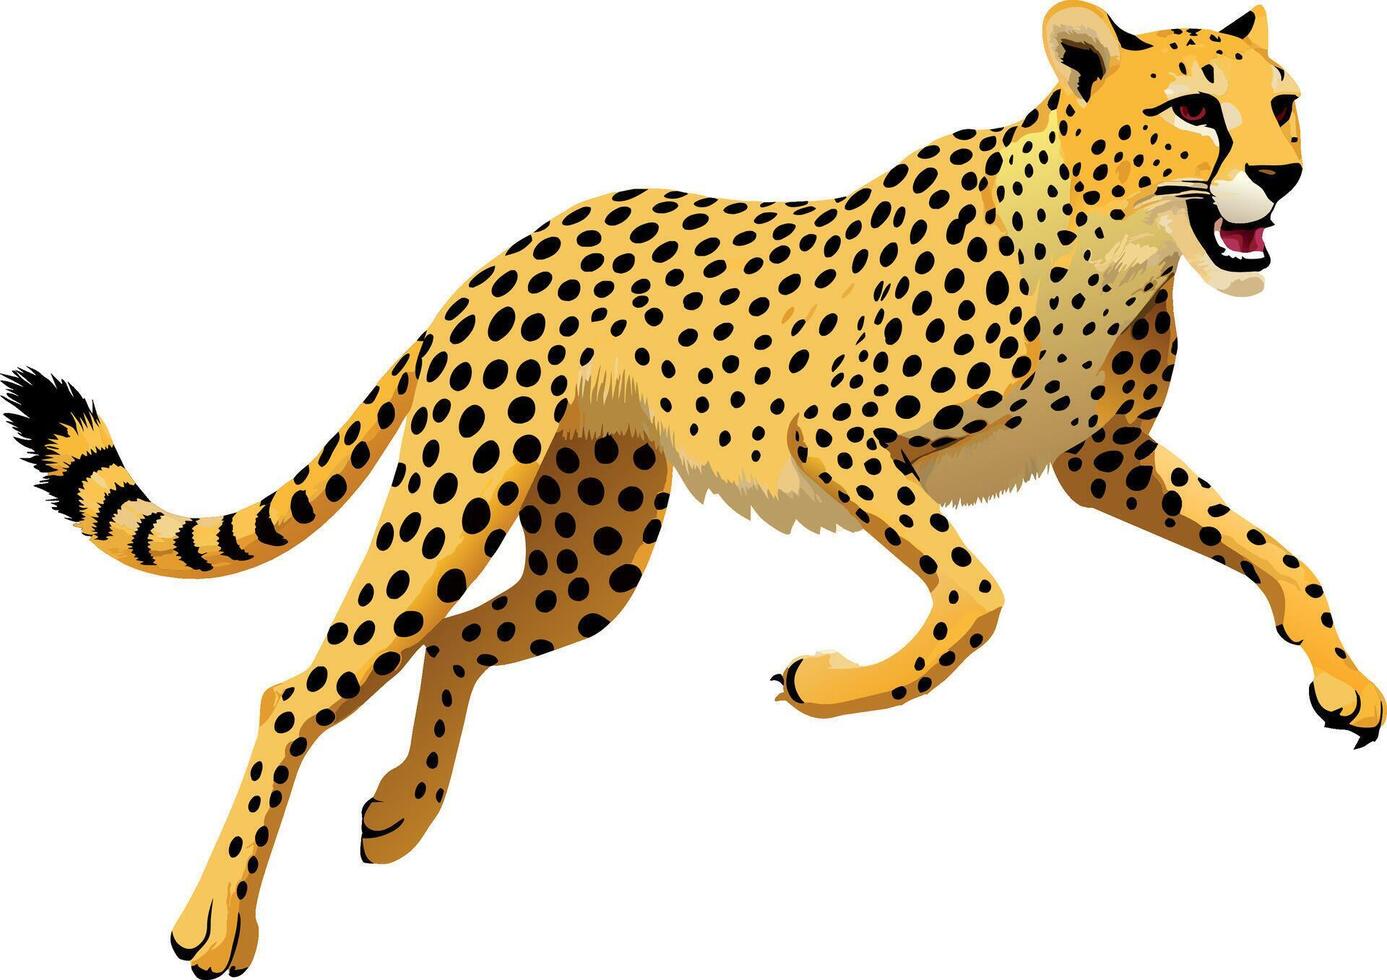 Gepard beschleunigen Laufen fleischfressend wild Tier vektor